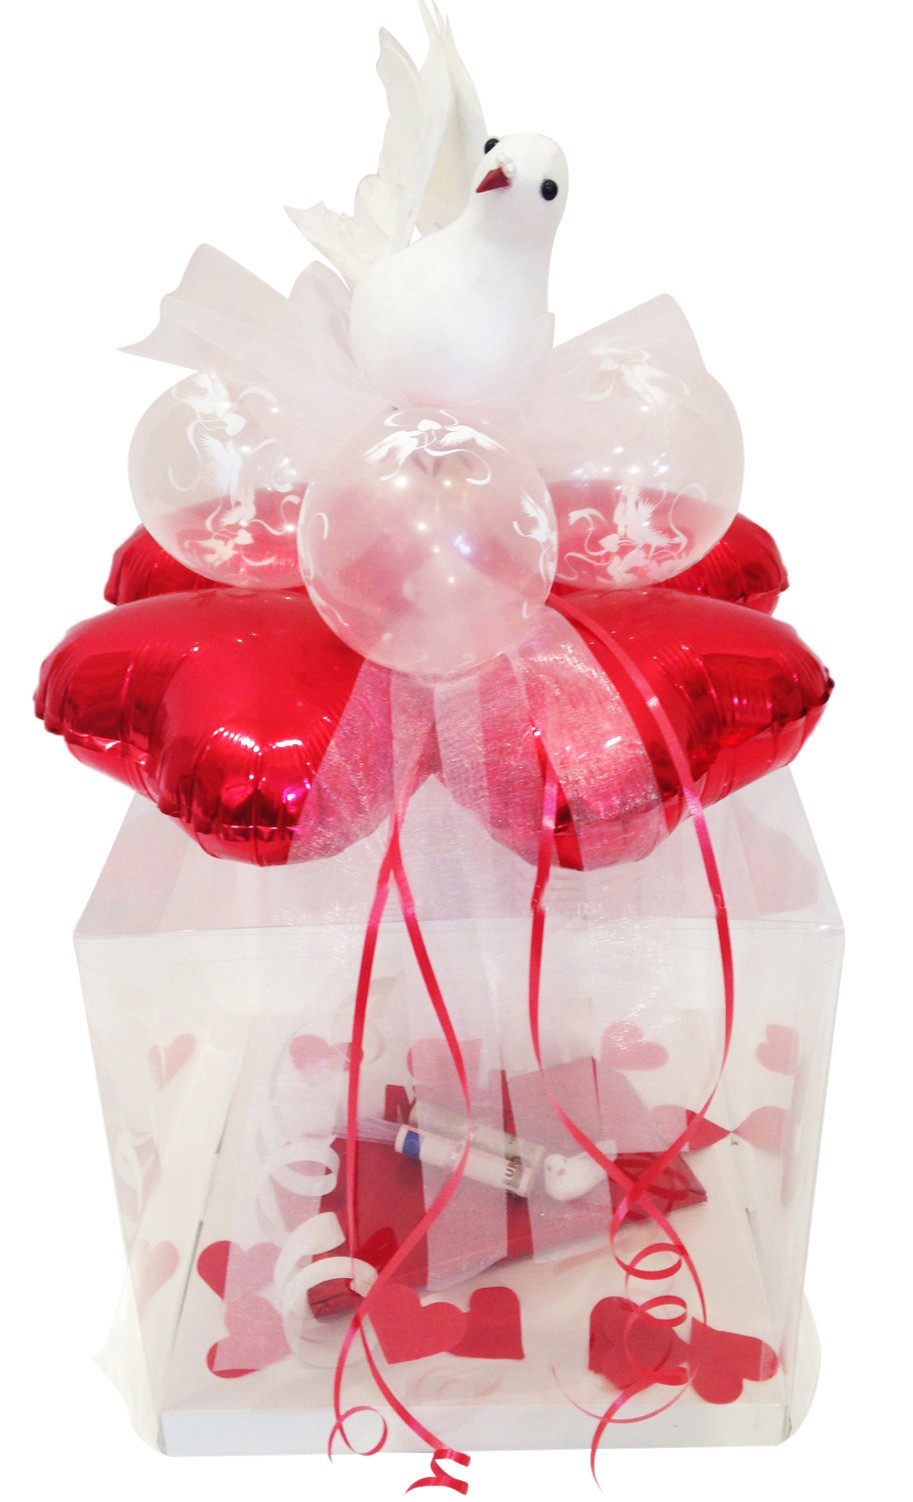 Geschenkbox Hochzeit
 GESCHENKBALLON ZUR HOCHZEIT Geschenk im Luftballon